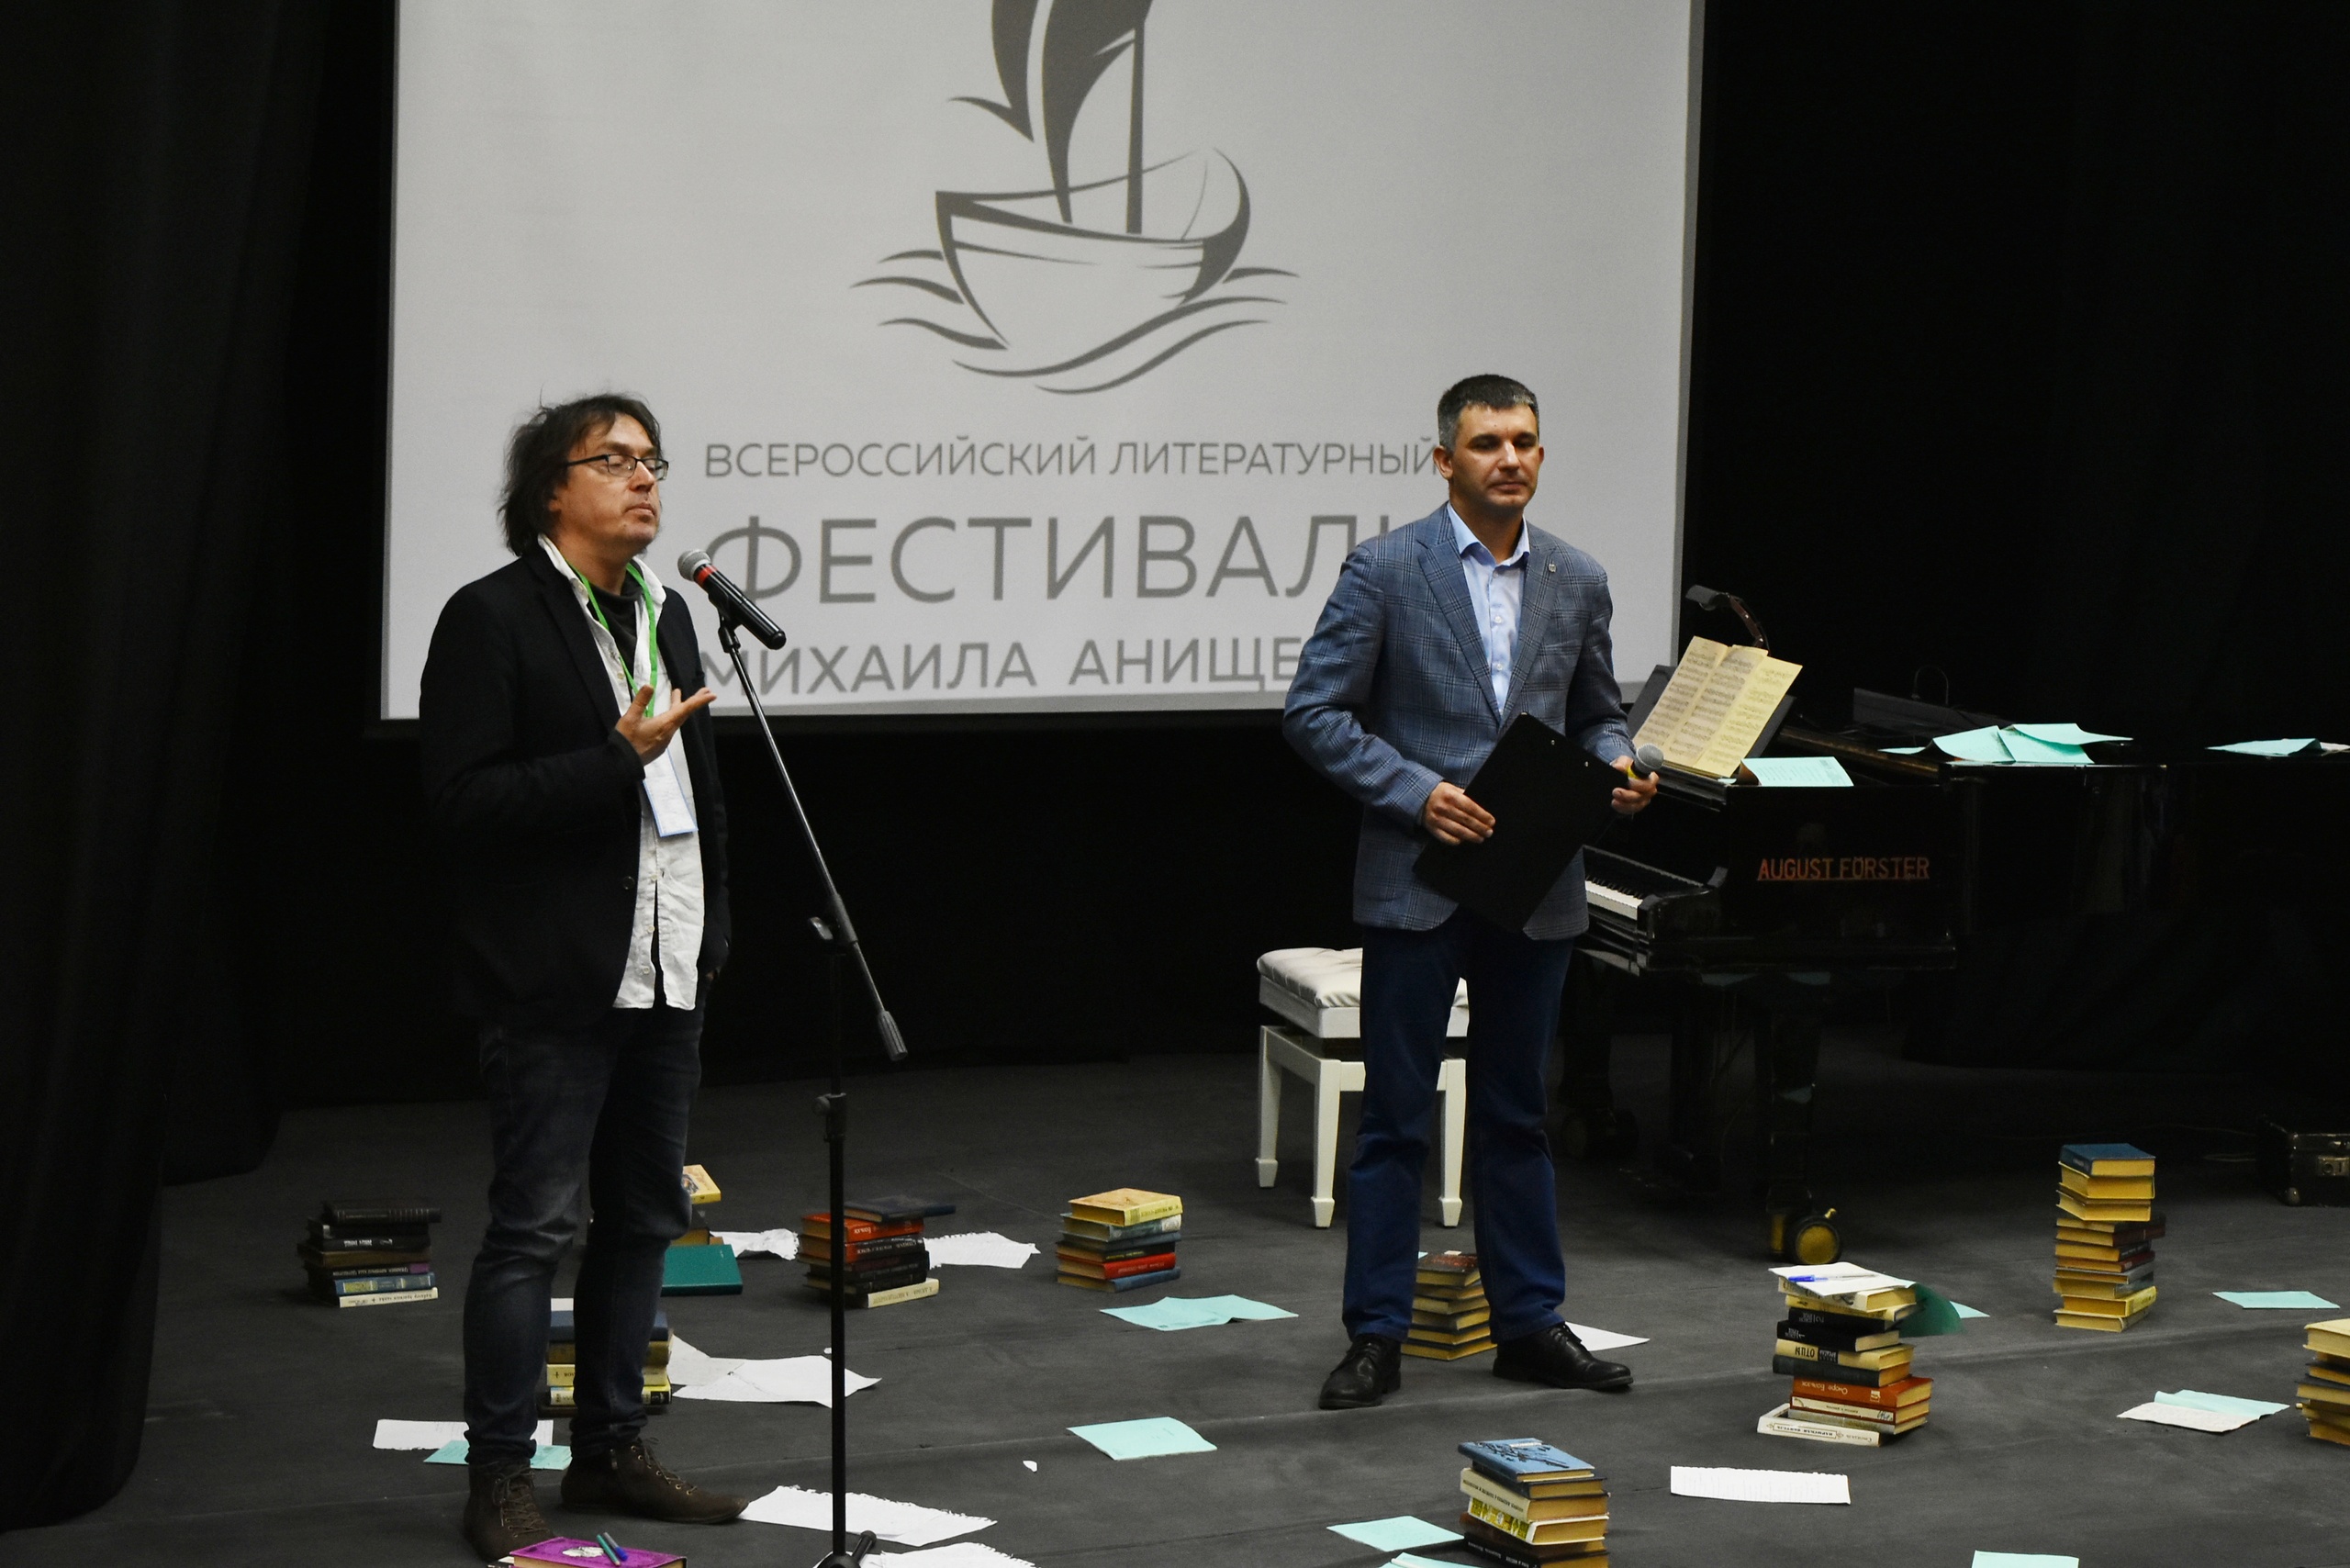 В Самаре состоится XI Всероссийский литературный фестиваль имени Михаила Анищенко